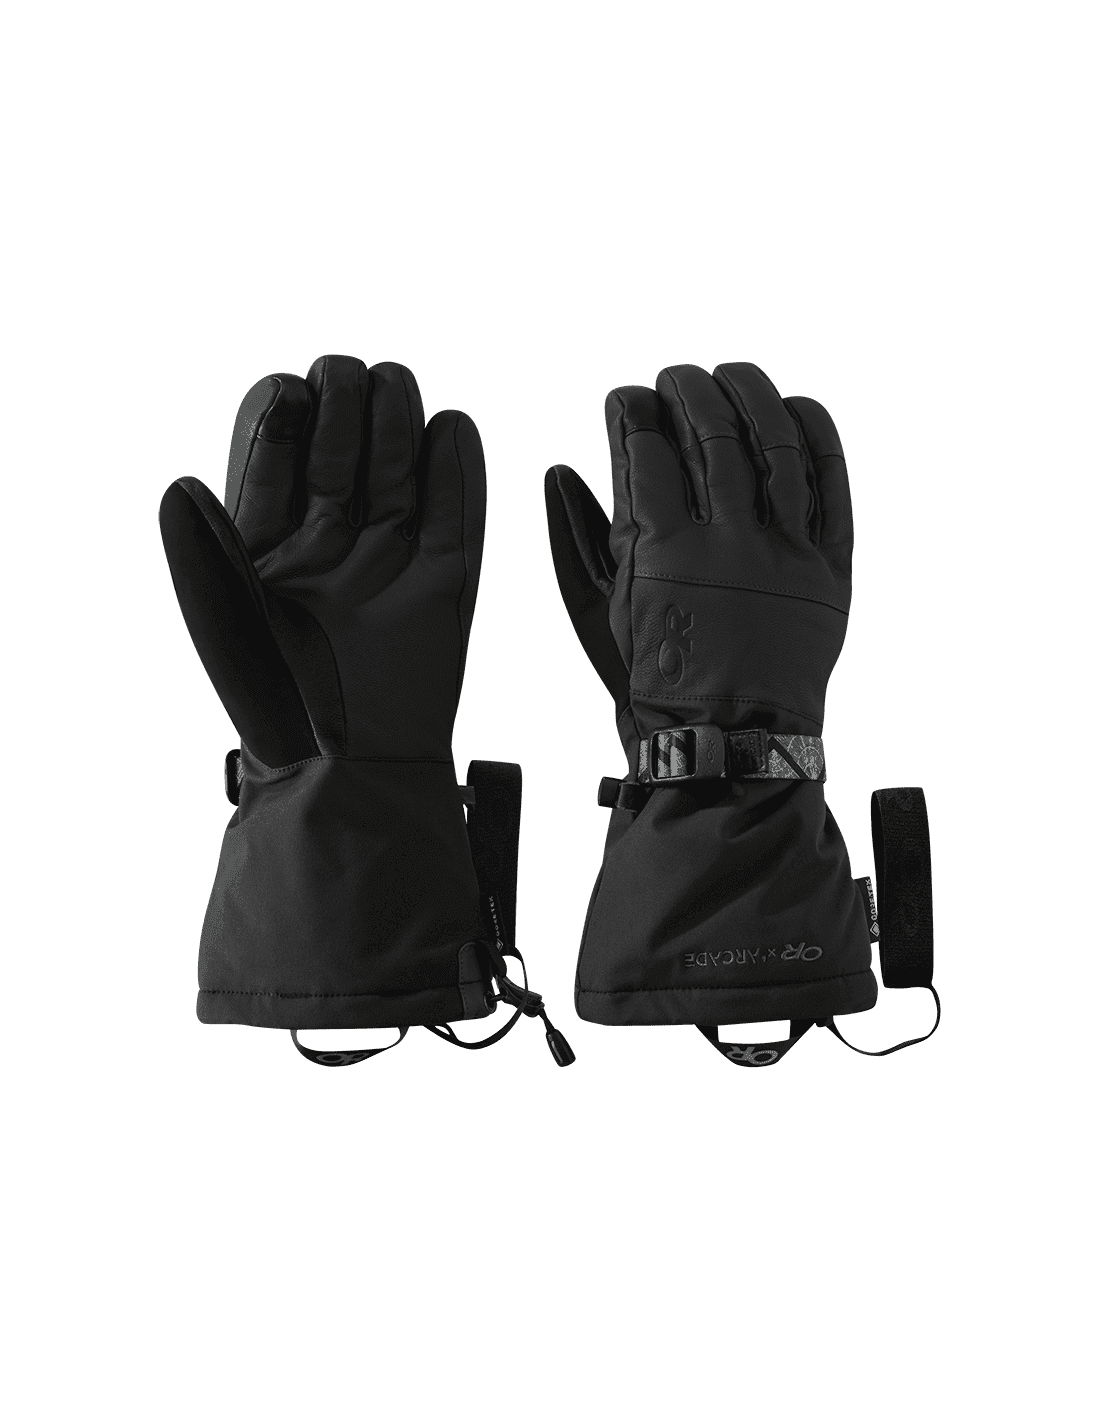 Level Web noir/gris gants de ski homme Textile tech Gants Hommes  –  HawaiiSurf